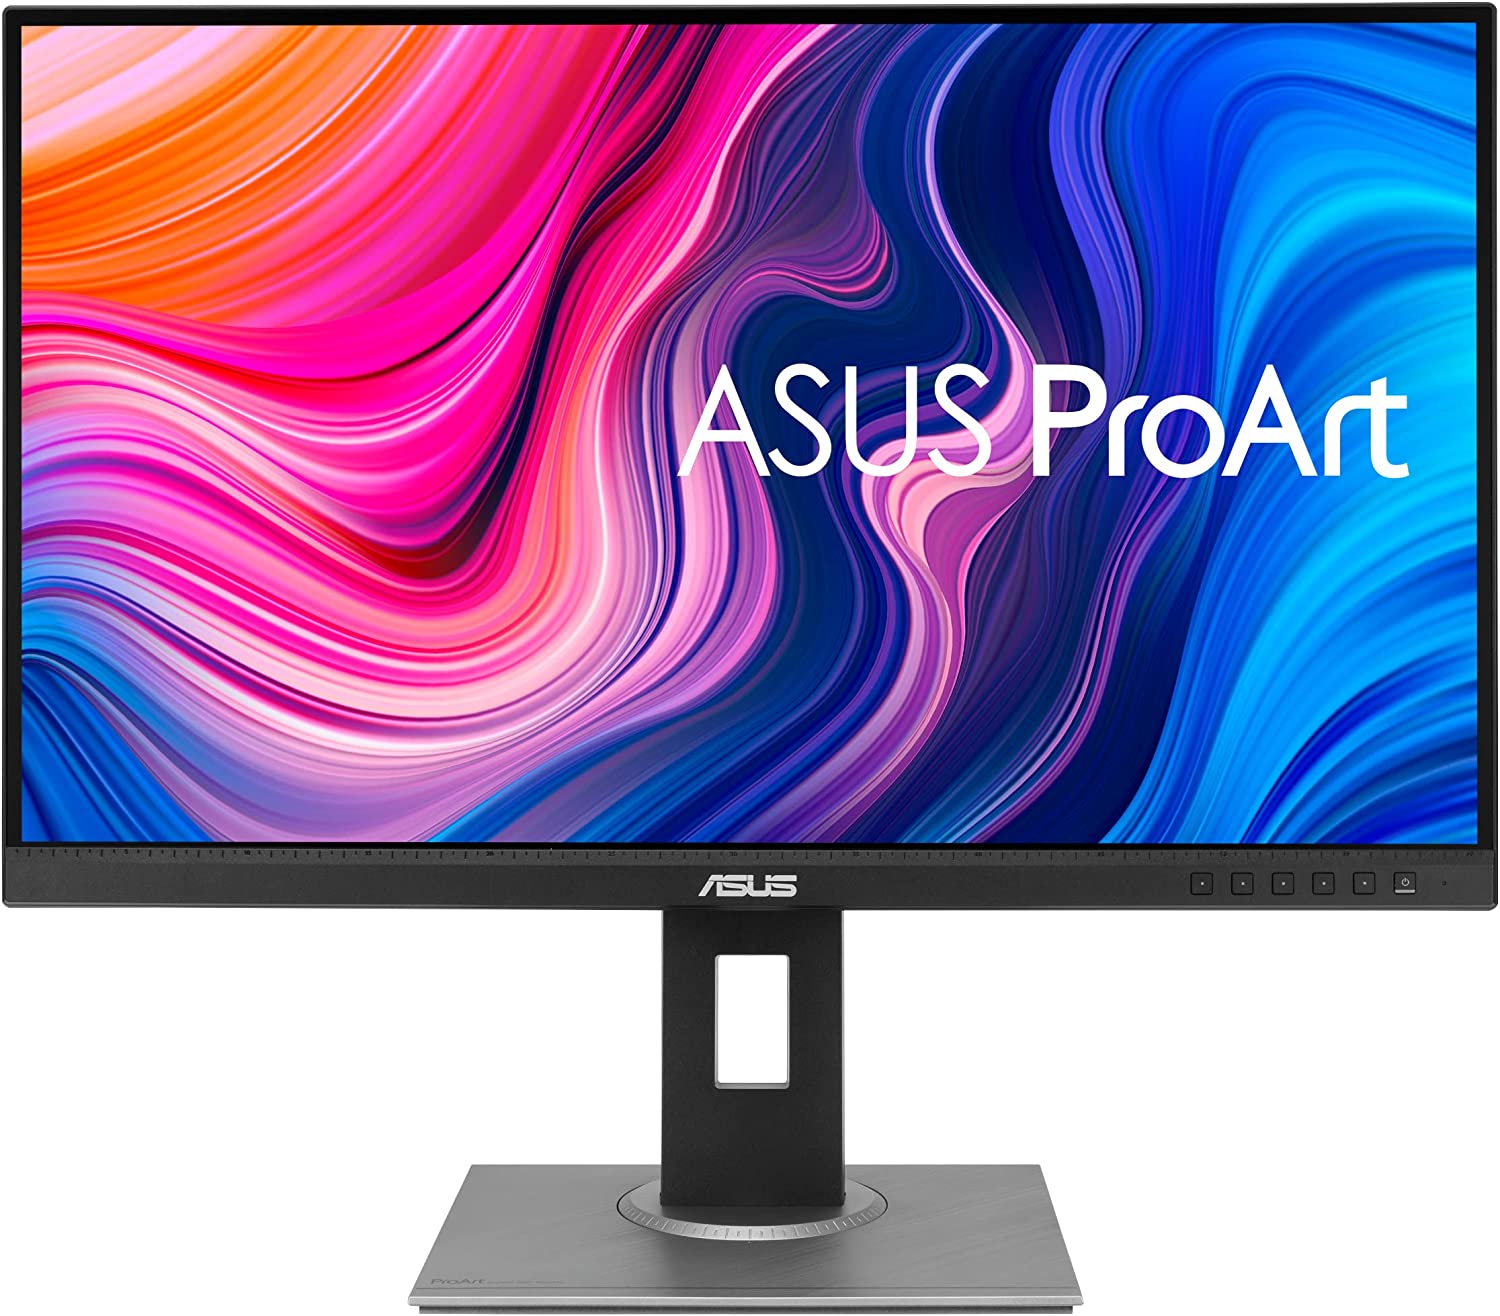 ASUS ProArt Display PA278QV 27 WQHD 2560 x 1440 Monitor 100 sRGBRec. 709 ΔE 2 IPS DisplayPort HDMI DVI D Mini DP Calman Verified Eye Care 2